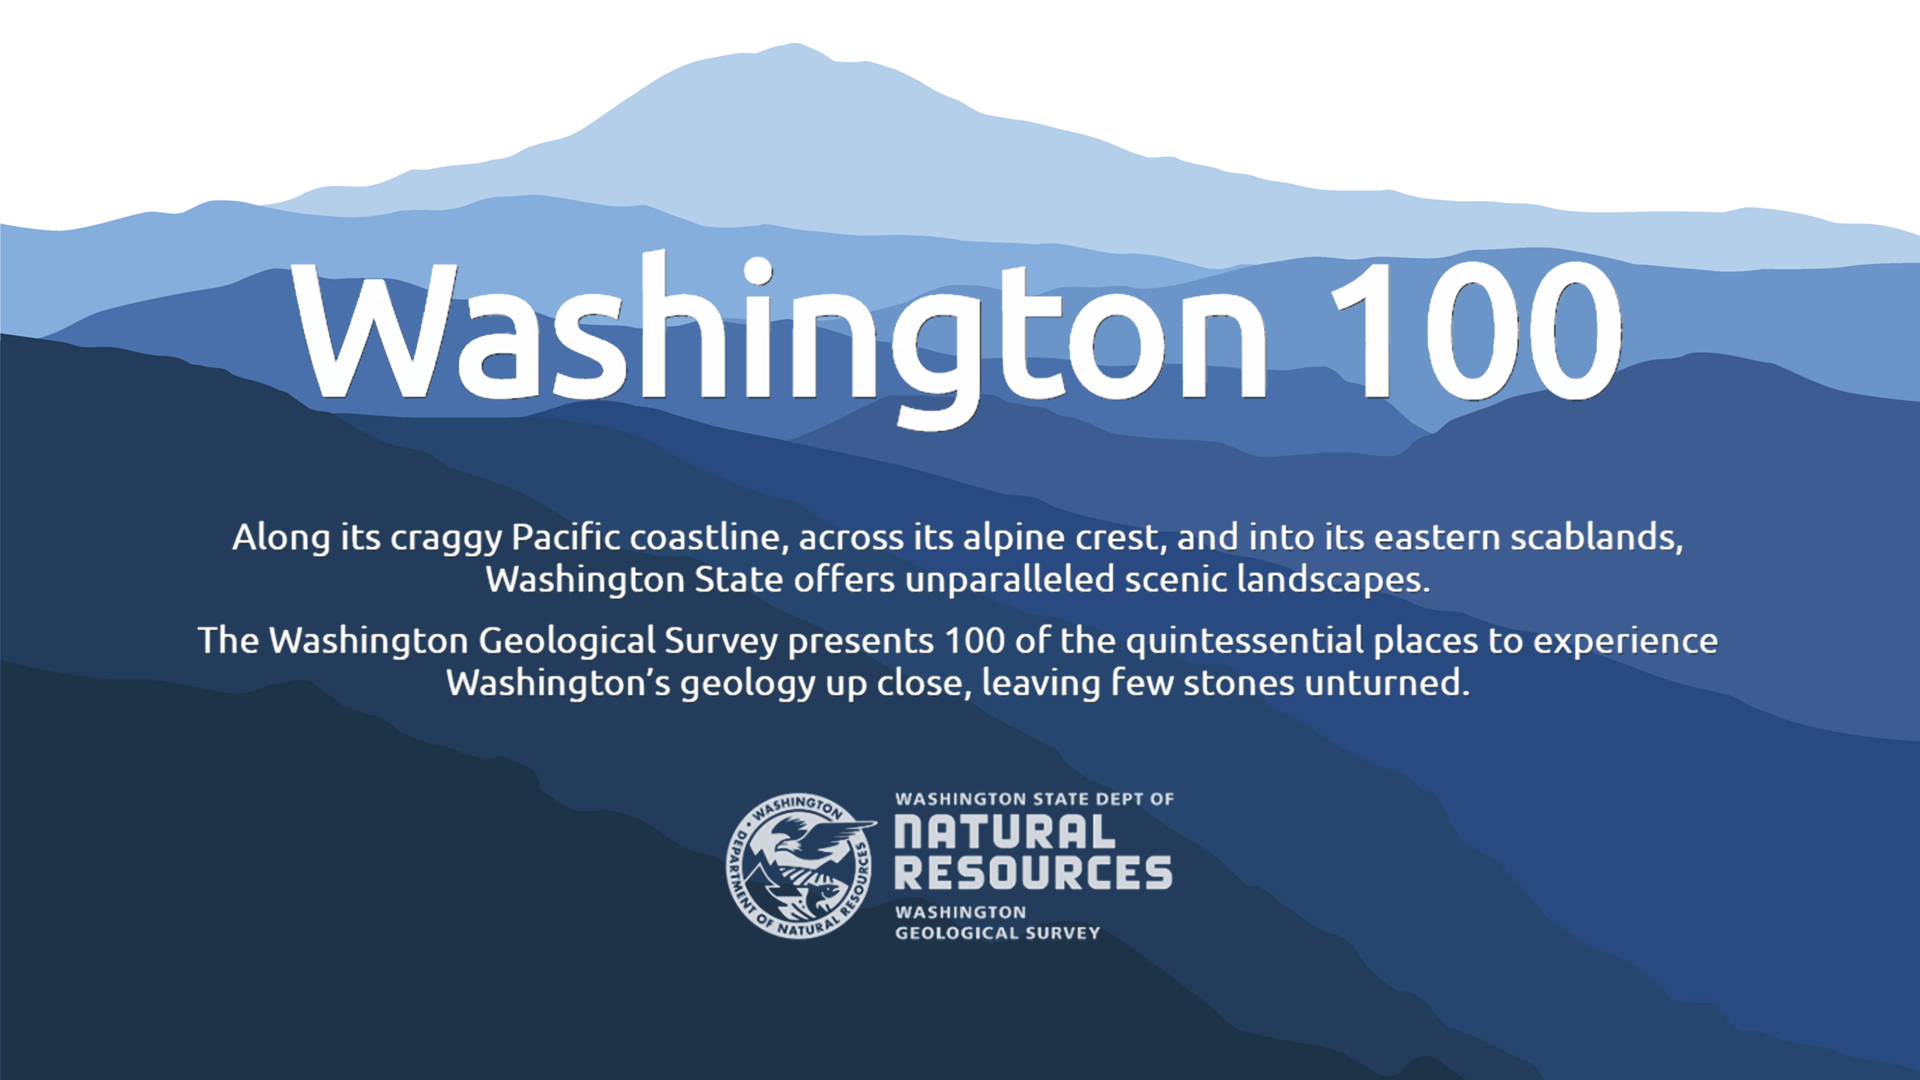 WA100: A Washington Geotourism Website